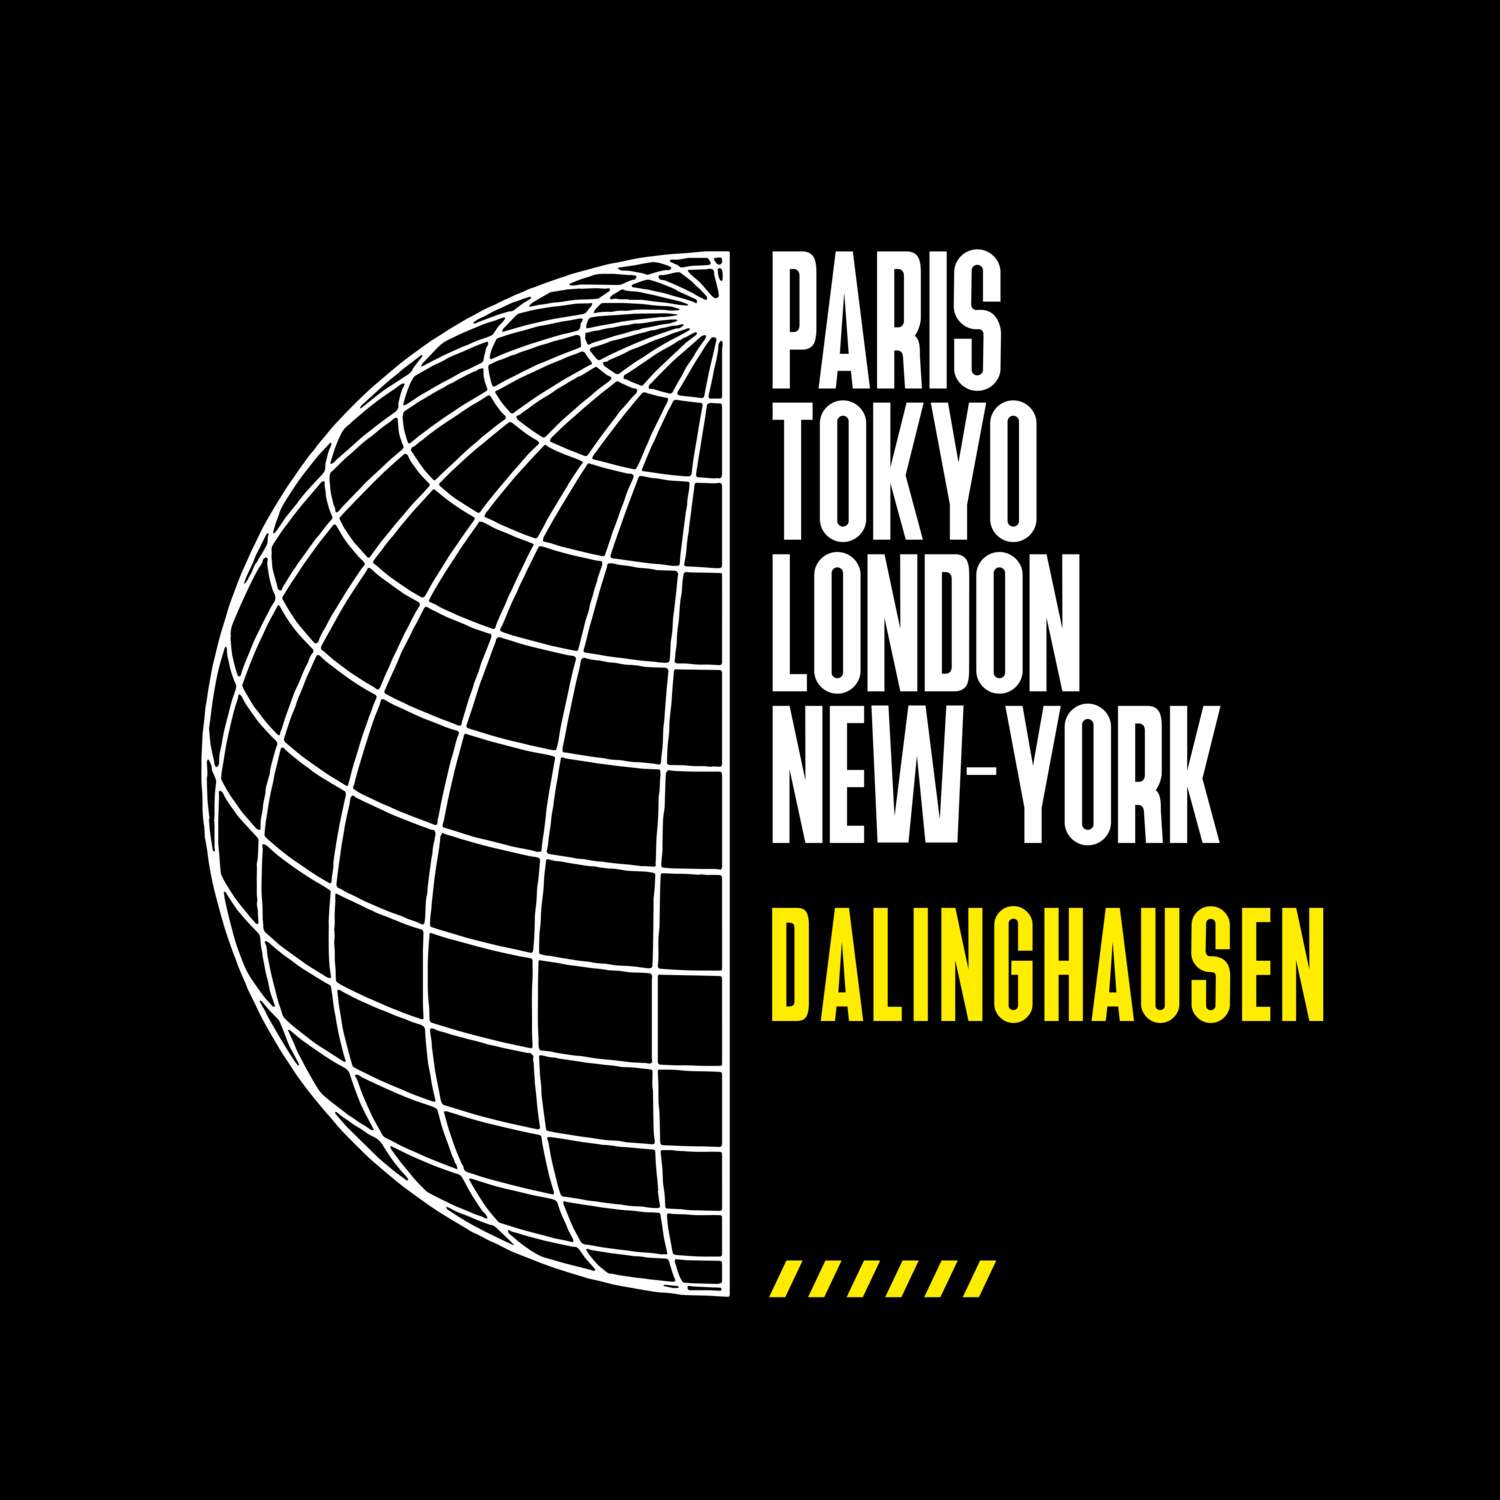 Dalinghausen T-Shirt »Paris Tokyo London«